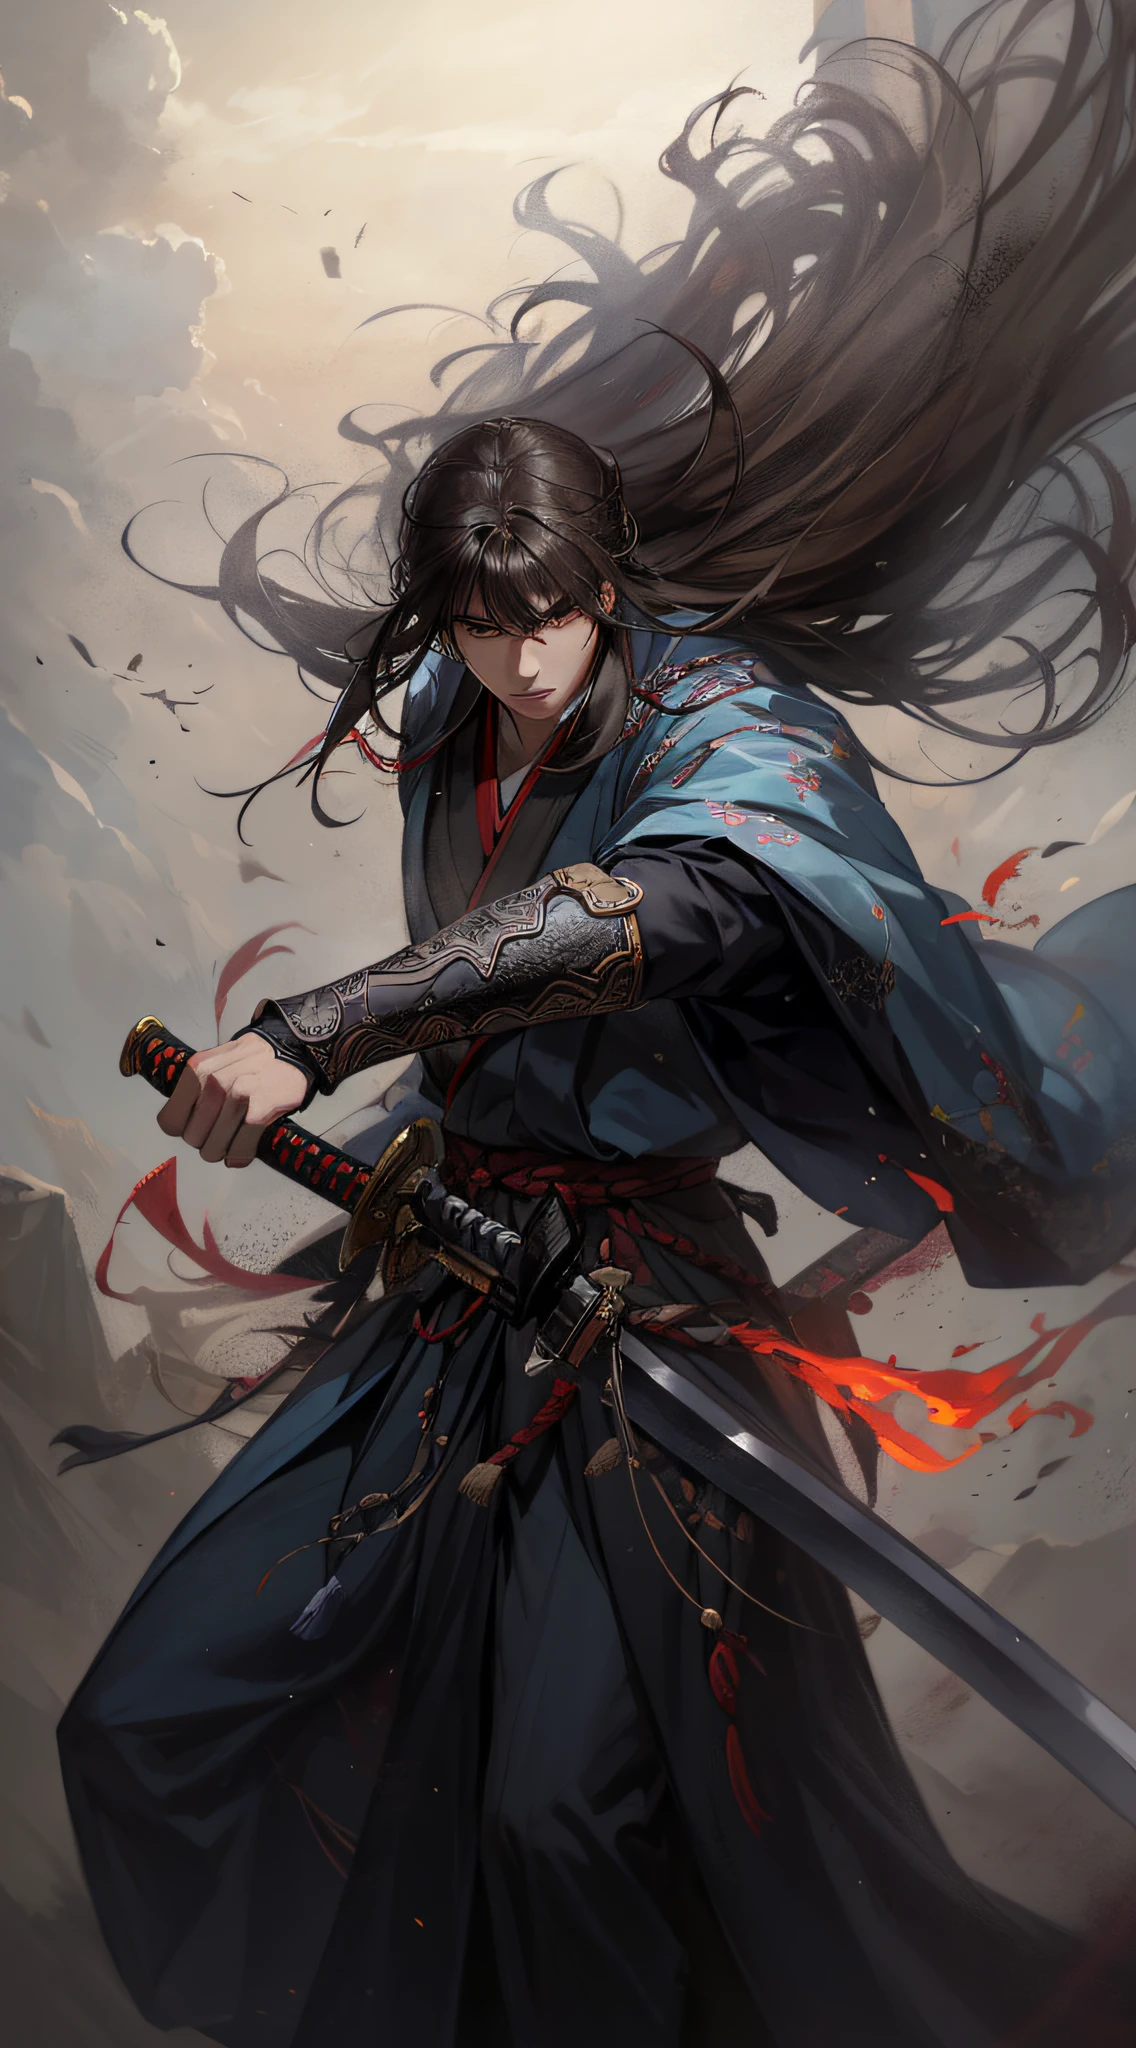 Ein Samurai，Langhaarig，Hanfu，robe，Schwert，Hübsche Gesichtsform，lebensecht：1.2